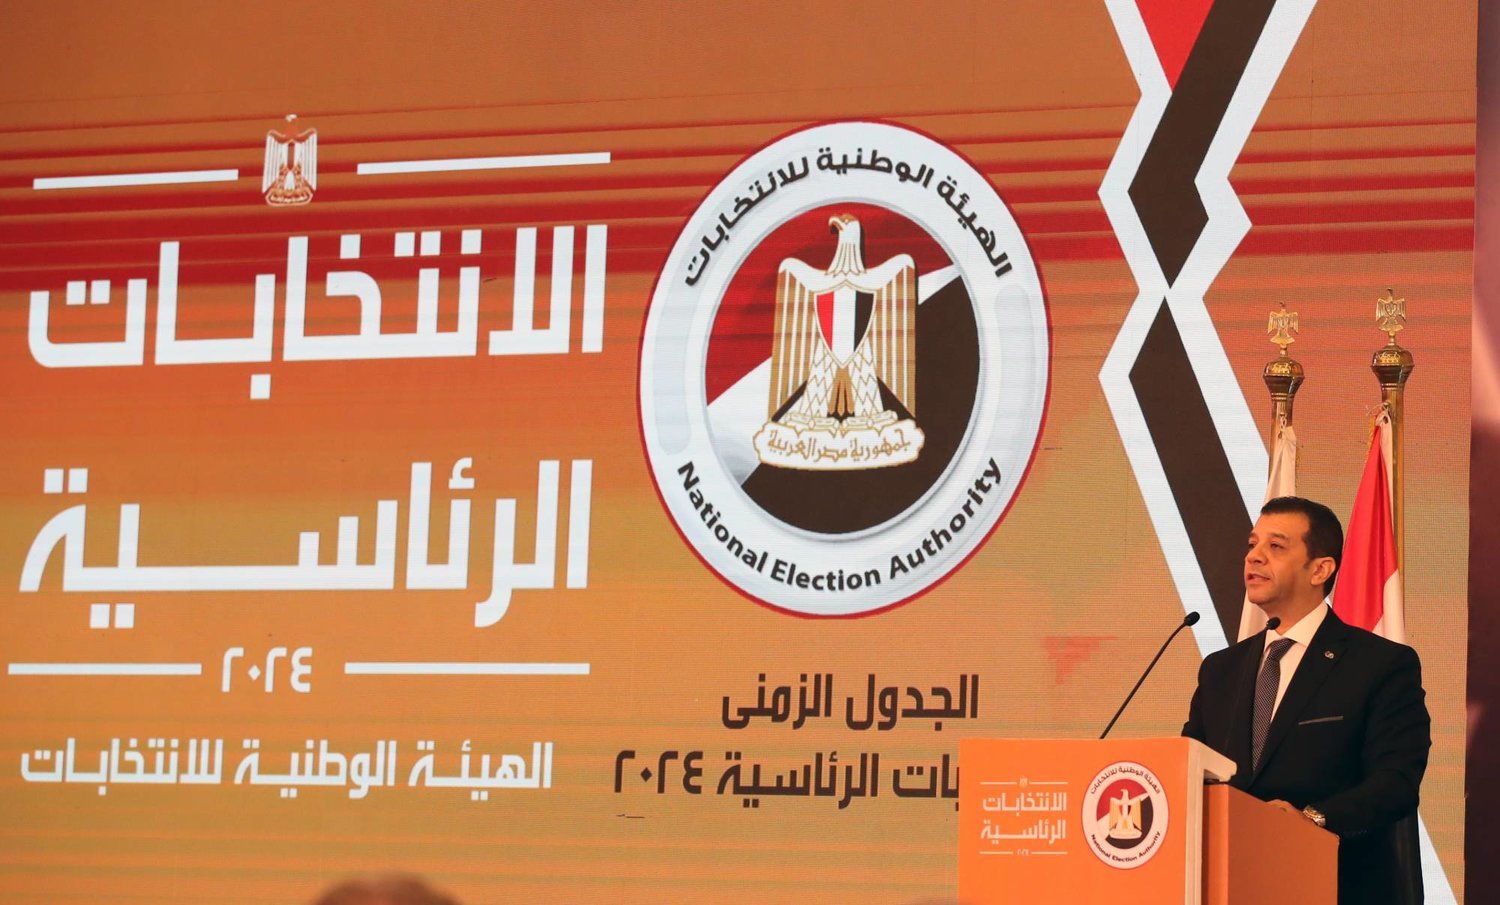 Mısır'daki Ulusal Seçim Kurumu, cumhurbaşkanlığı seçiminin takvimini açıkladı. (EPA)